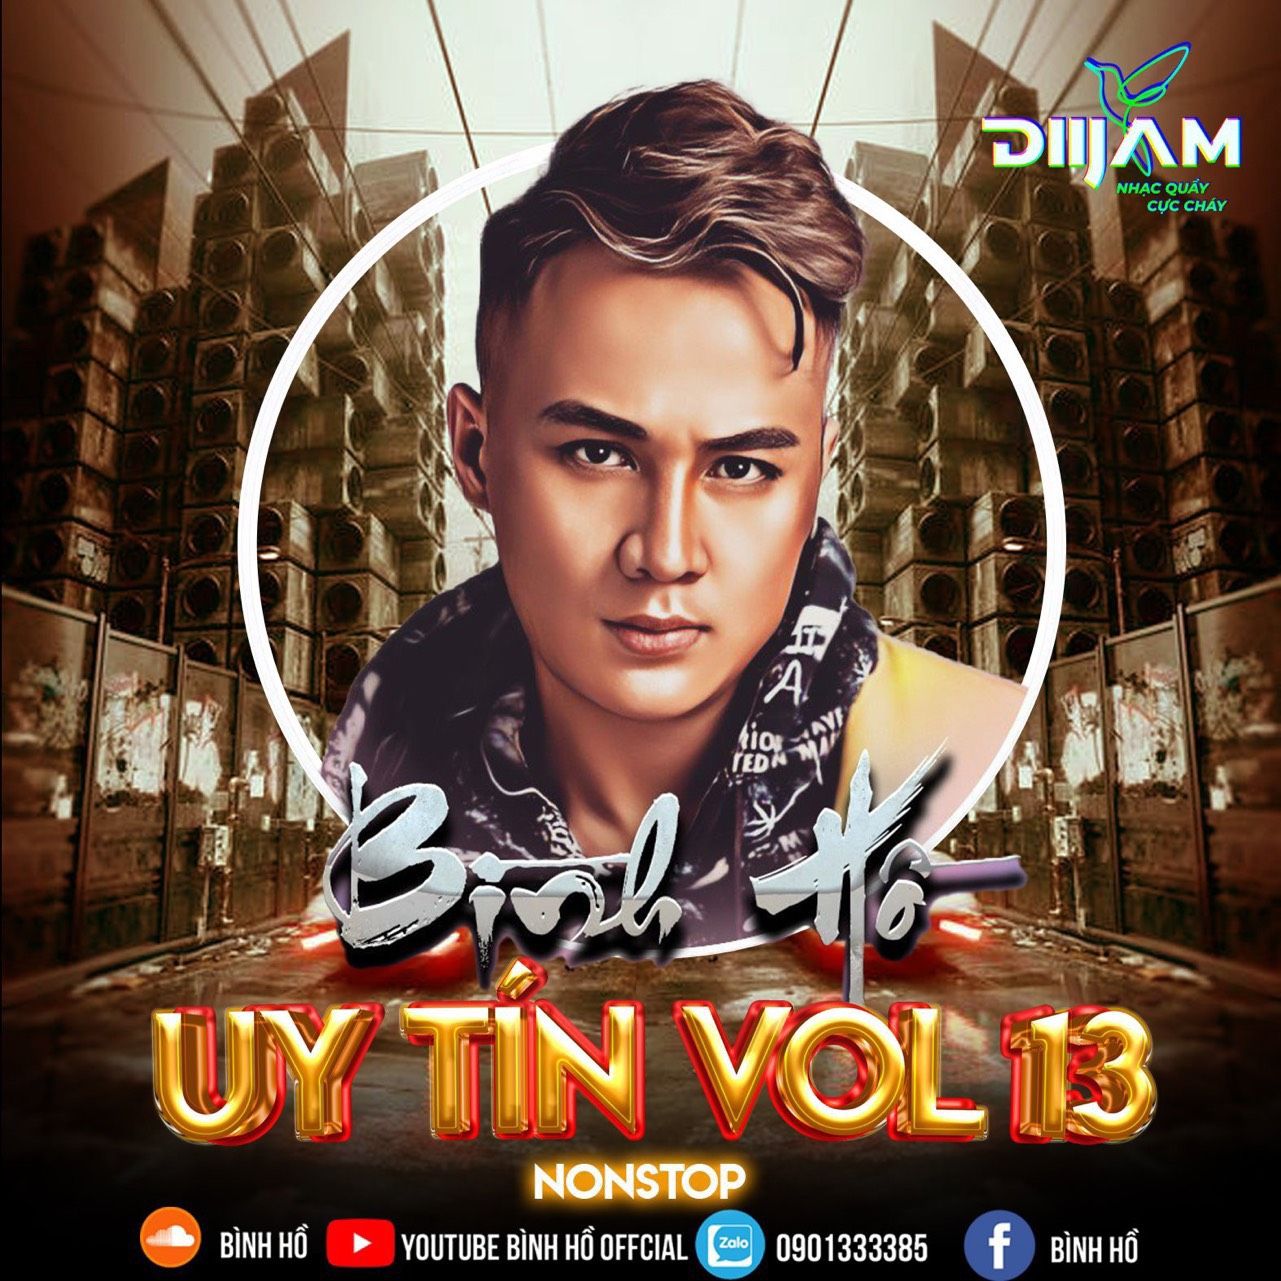 ਡਾਉਨਲੋਡ ਕਰੋ Nonstop Uy Tín Vol.13 ( Bình Hồ Mix)